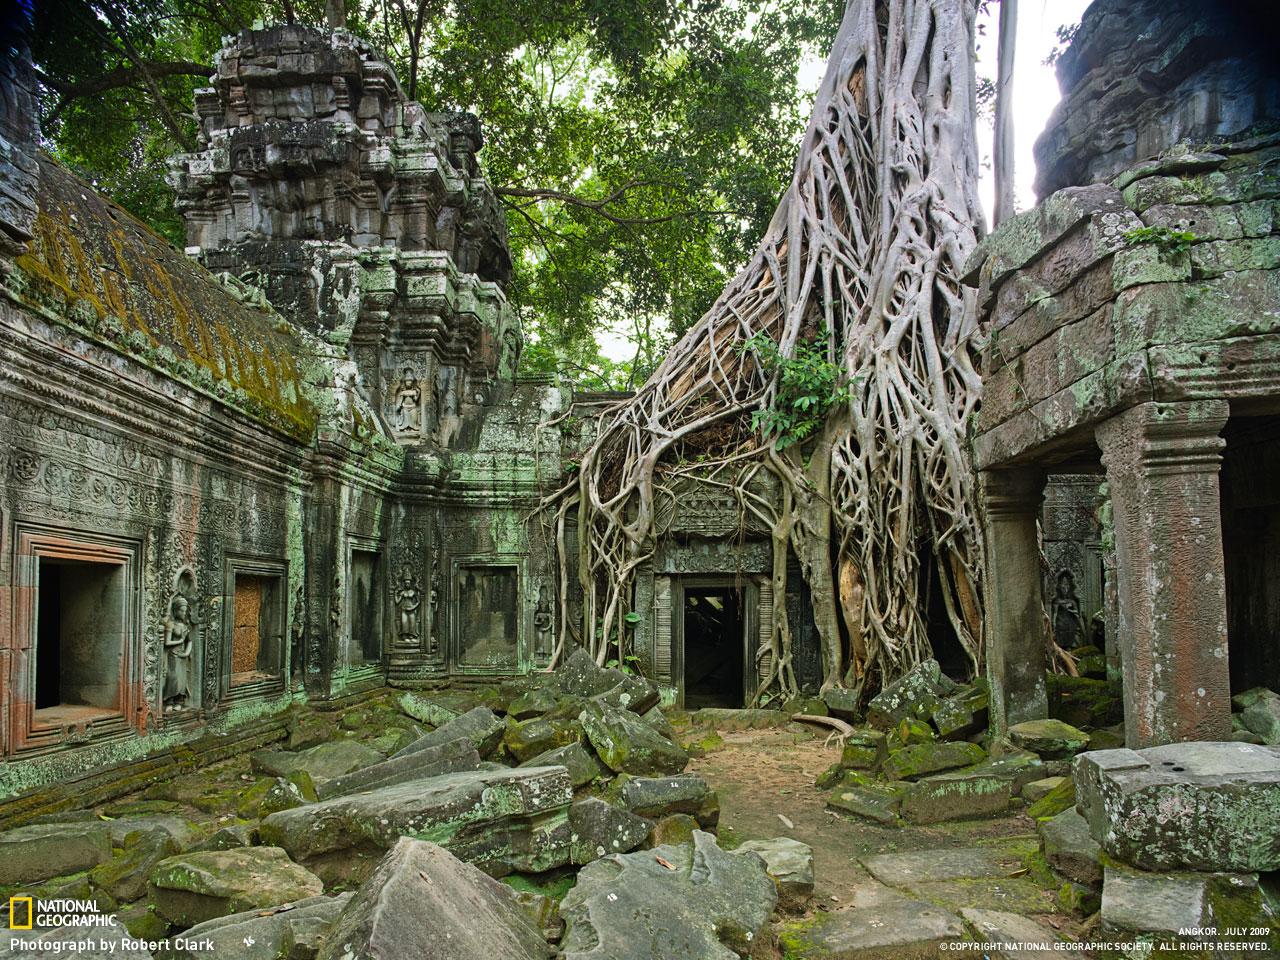 Dans la jungle : 
Cette endroit serait propice pour le prochain Indiana Jones non ! 
Source : national géographie
Photo : Robert clark